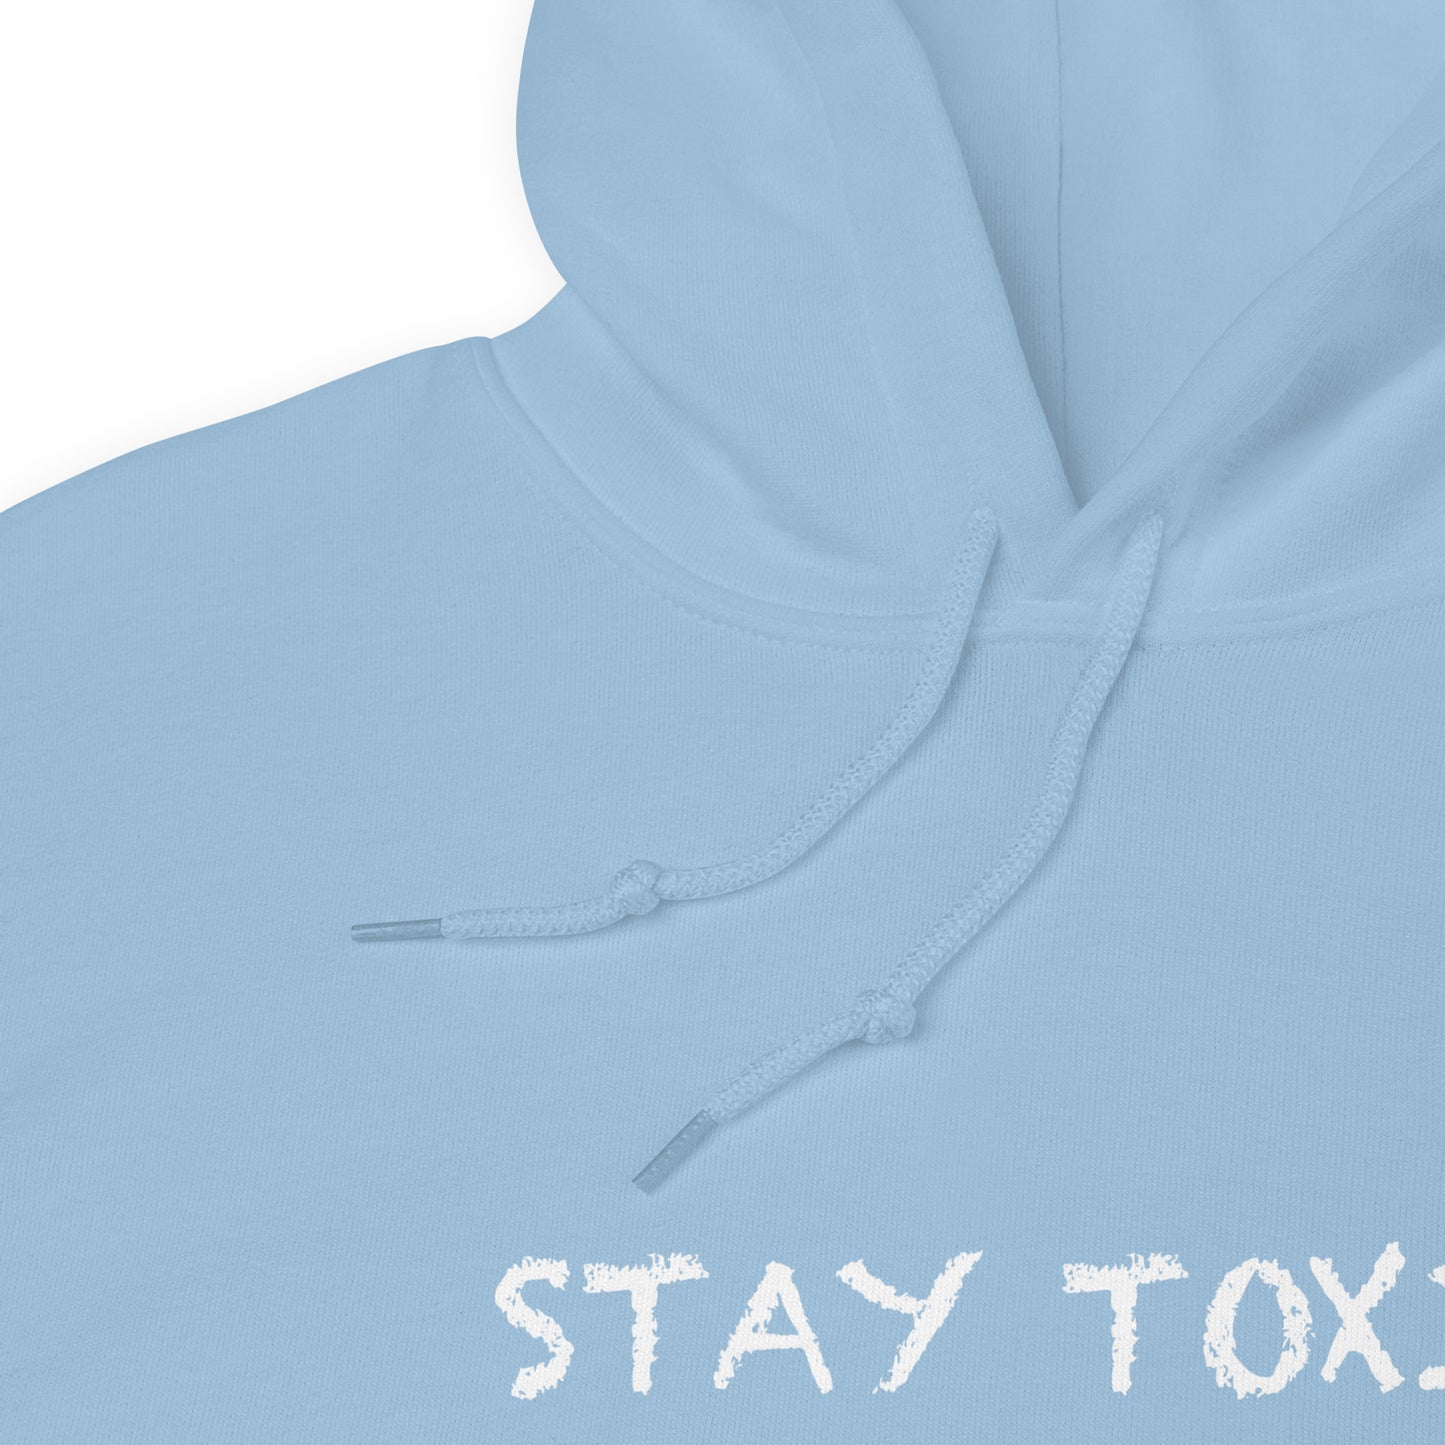 Pink / Blue Stay Toxic Hoodie